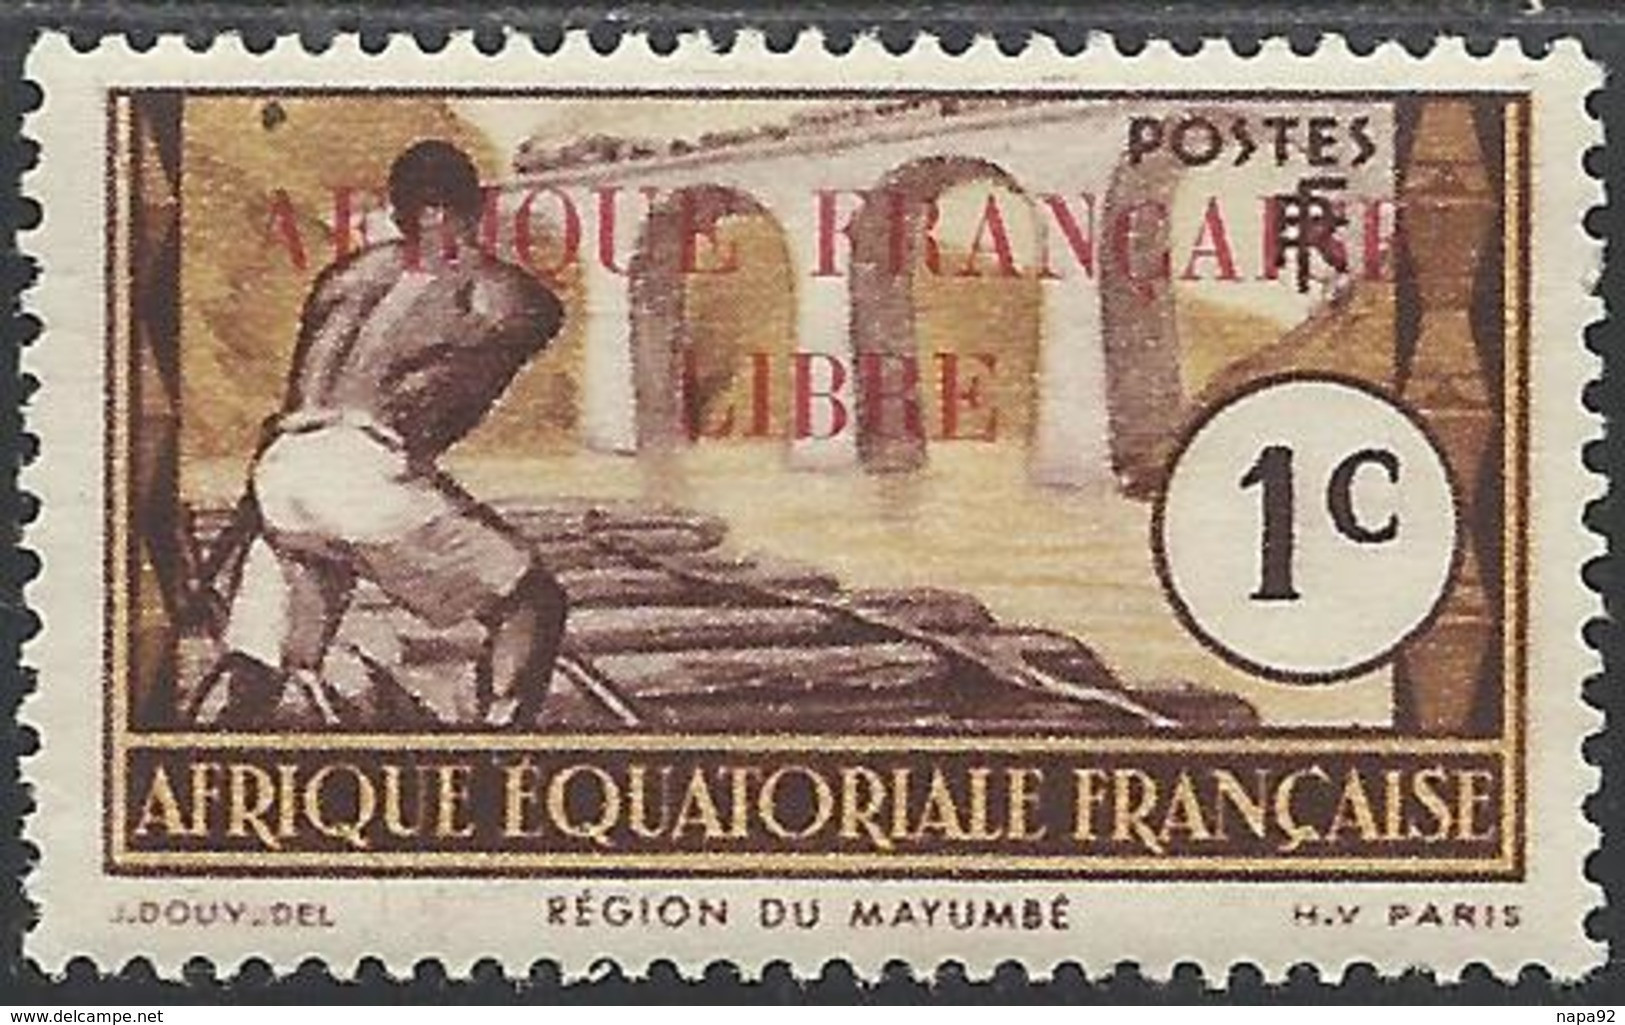 AFRIQUE EQUATORIALE FRANCAISE - AEF - A.E.F. - 1940 - YT 92** - Neufs